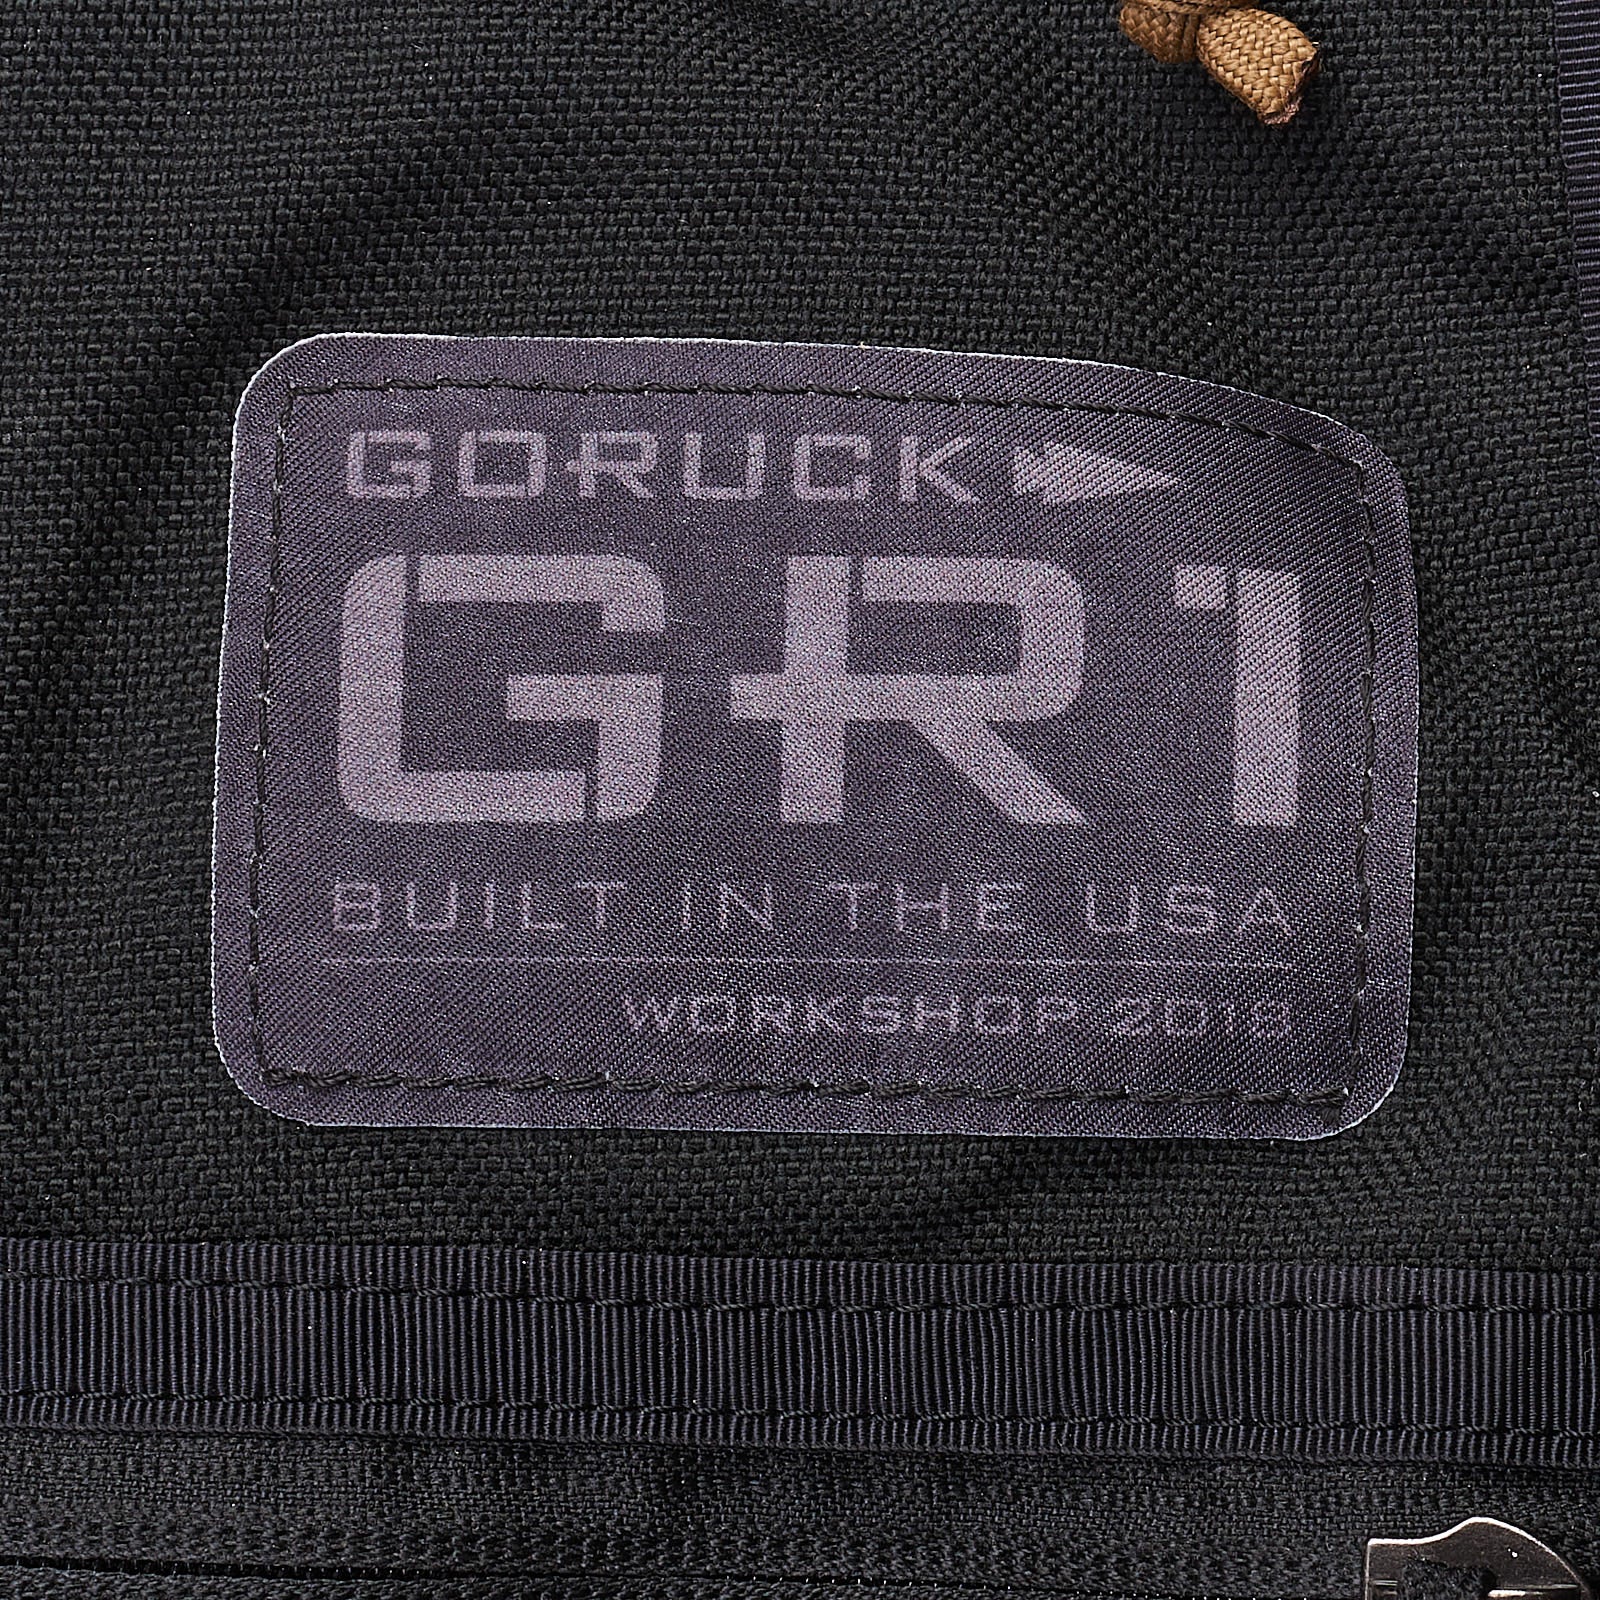 GORUCK GR1 Workshop 2018 Edition Black Backpack Bag 21L NEW GORUCK